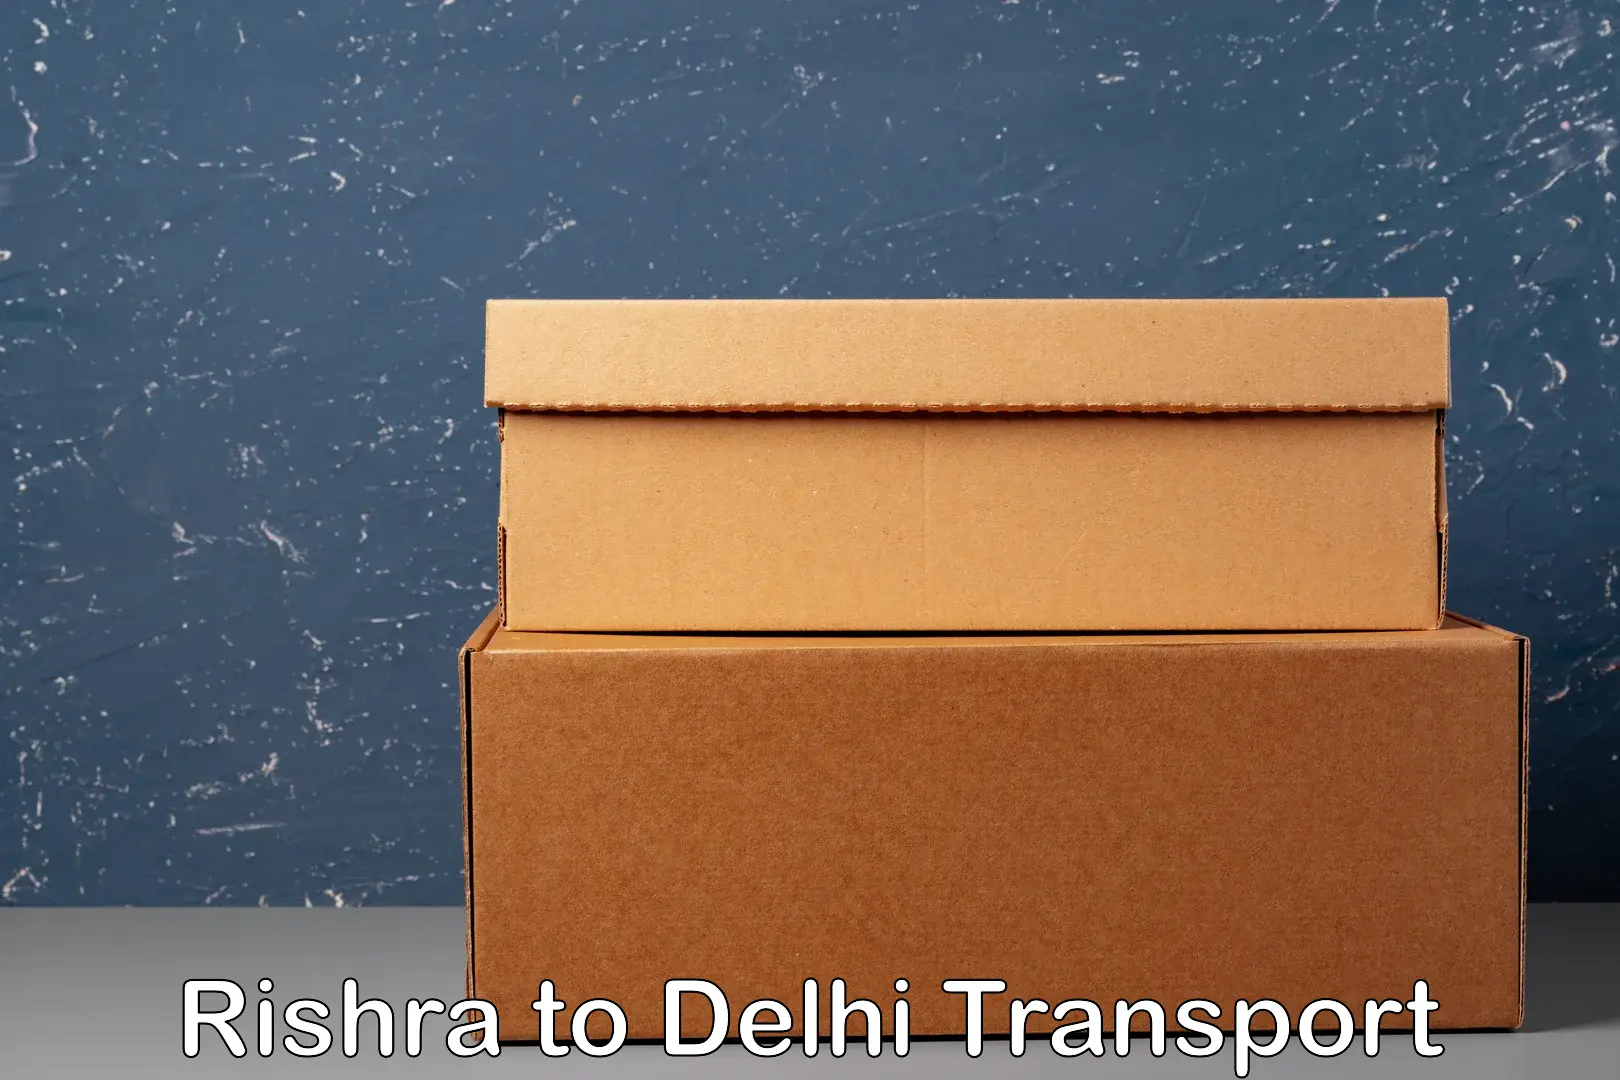 Furniture transport service Rishra to Jhilmil